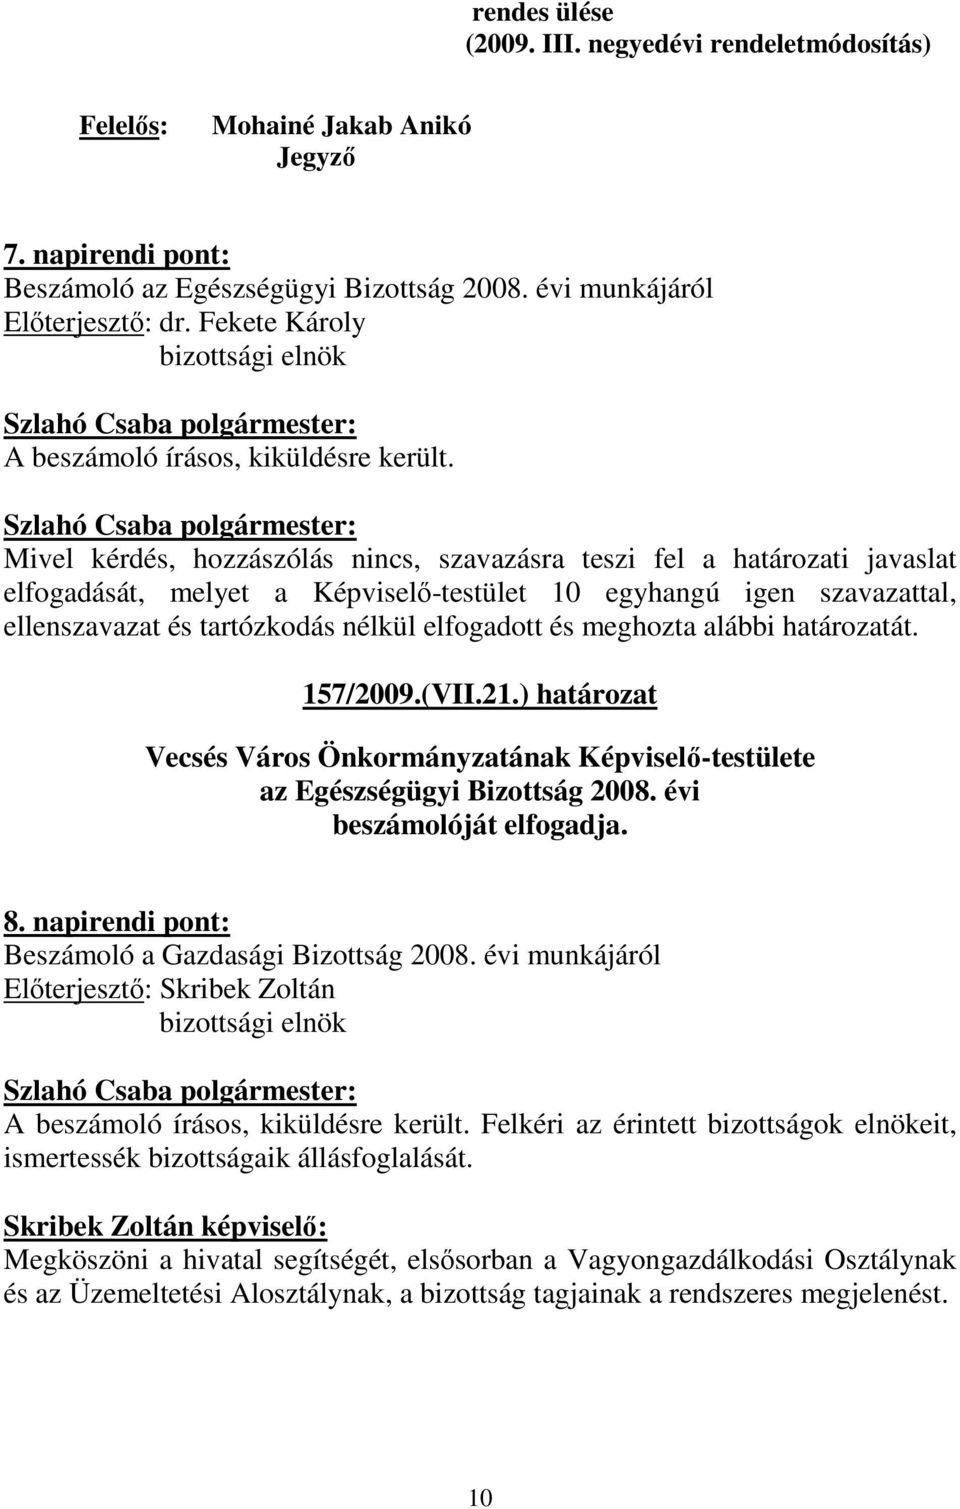 ) határozat Vecsés Város Önkormányzatának Képviselı-testülete az Egészségügyi Bizottság 2008. évi beszámolóját elfogadja. 8. napirendi pont: Beszámoló a Gazdasági Bizottság 2008.